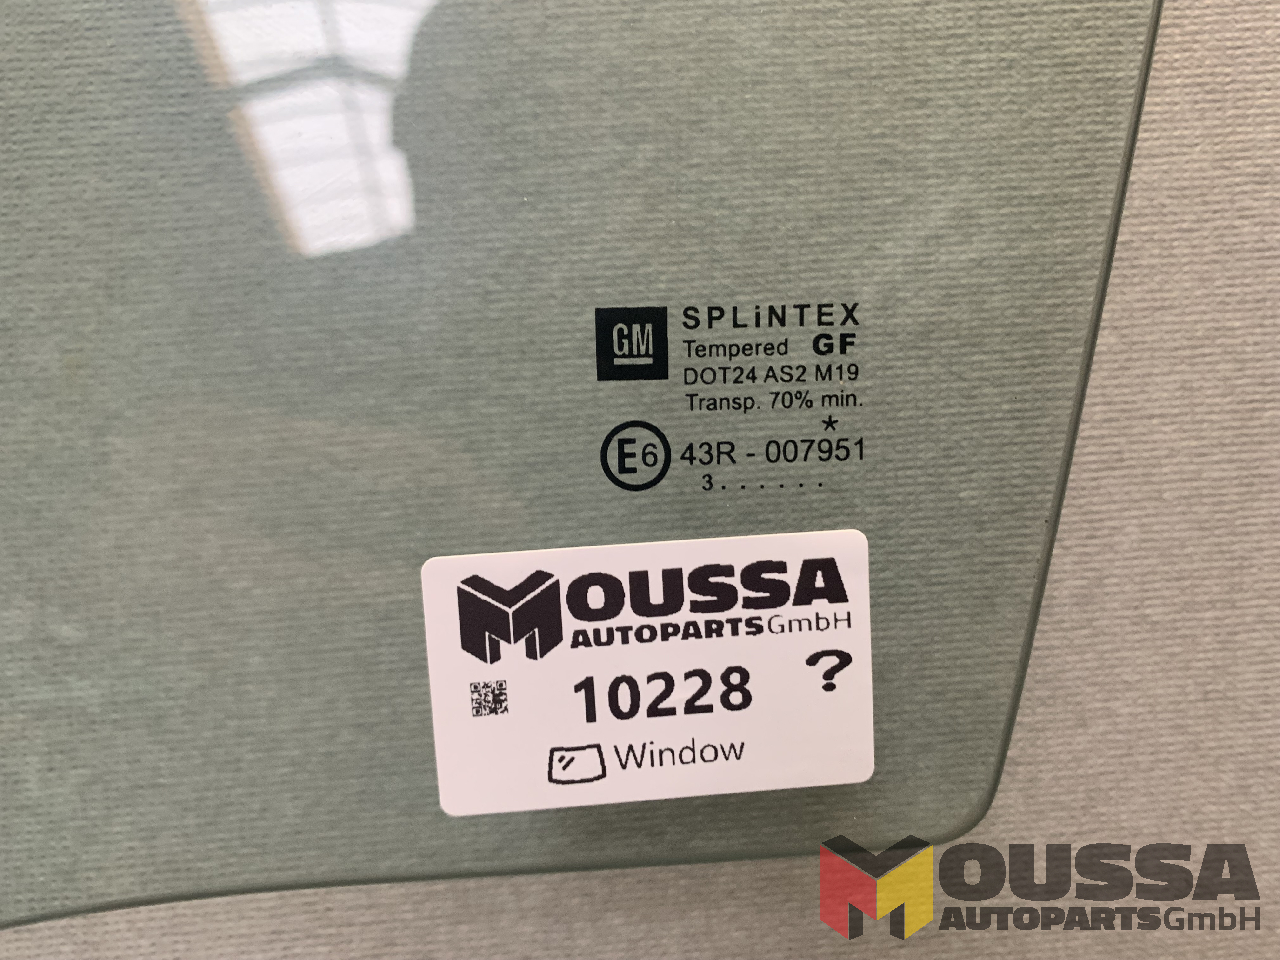 MOUSSA-AUTOPARTS-649218a48993d.jpg